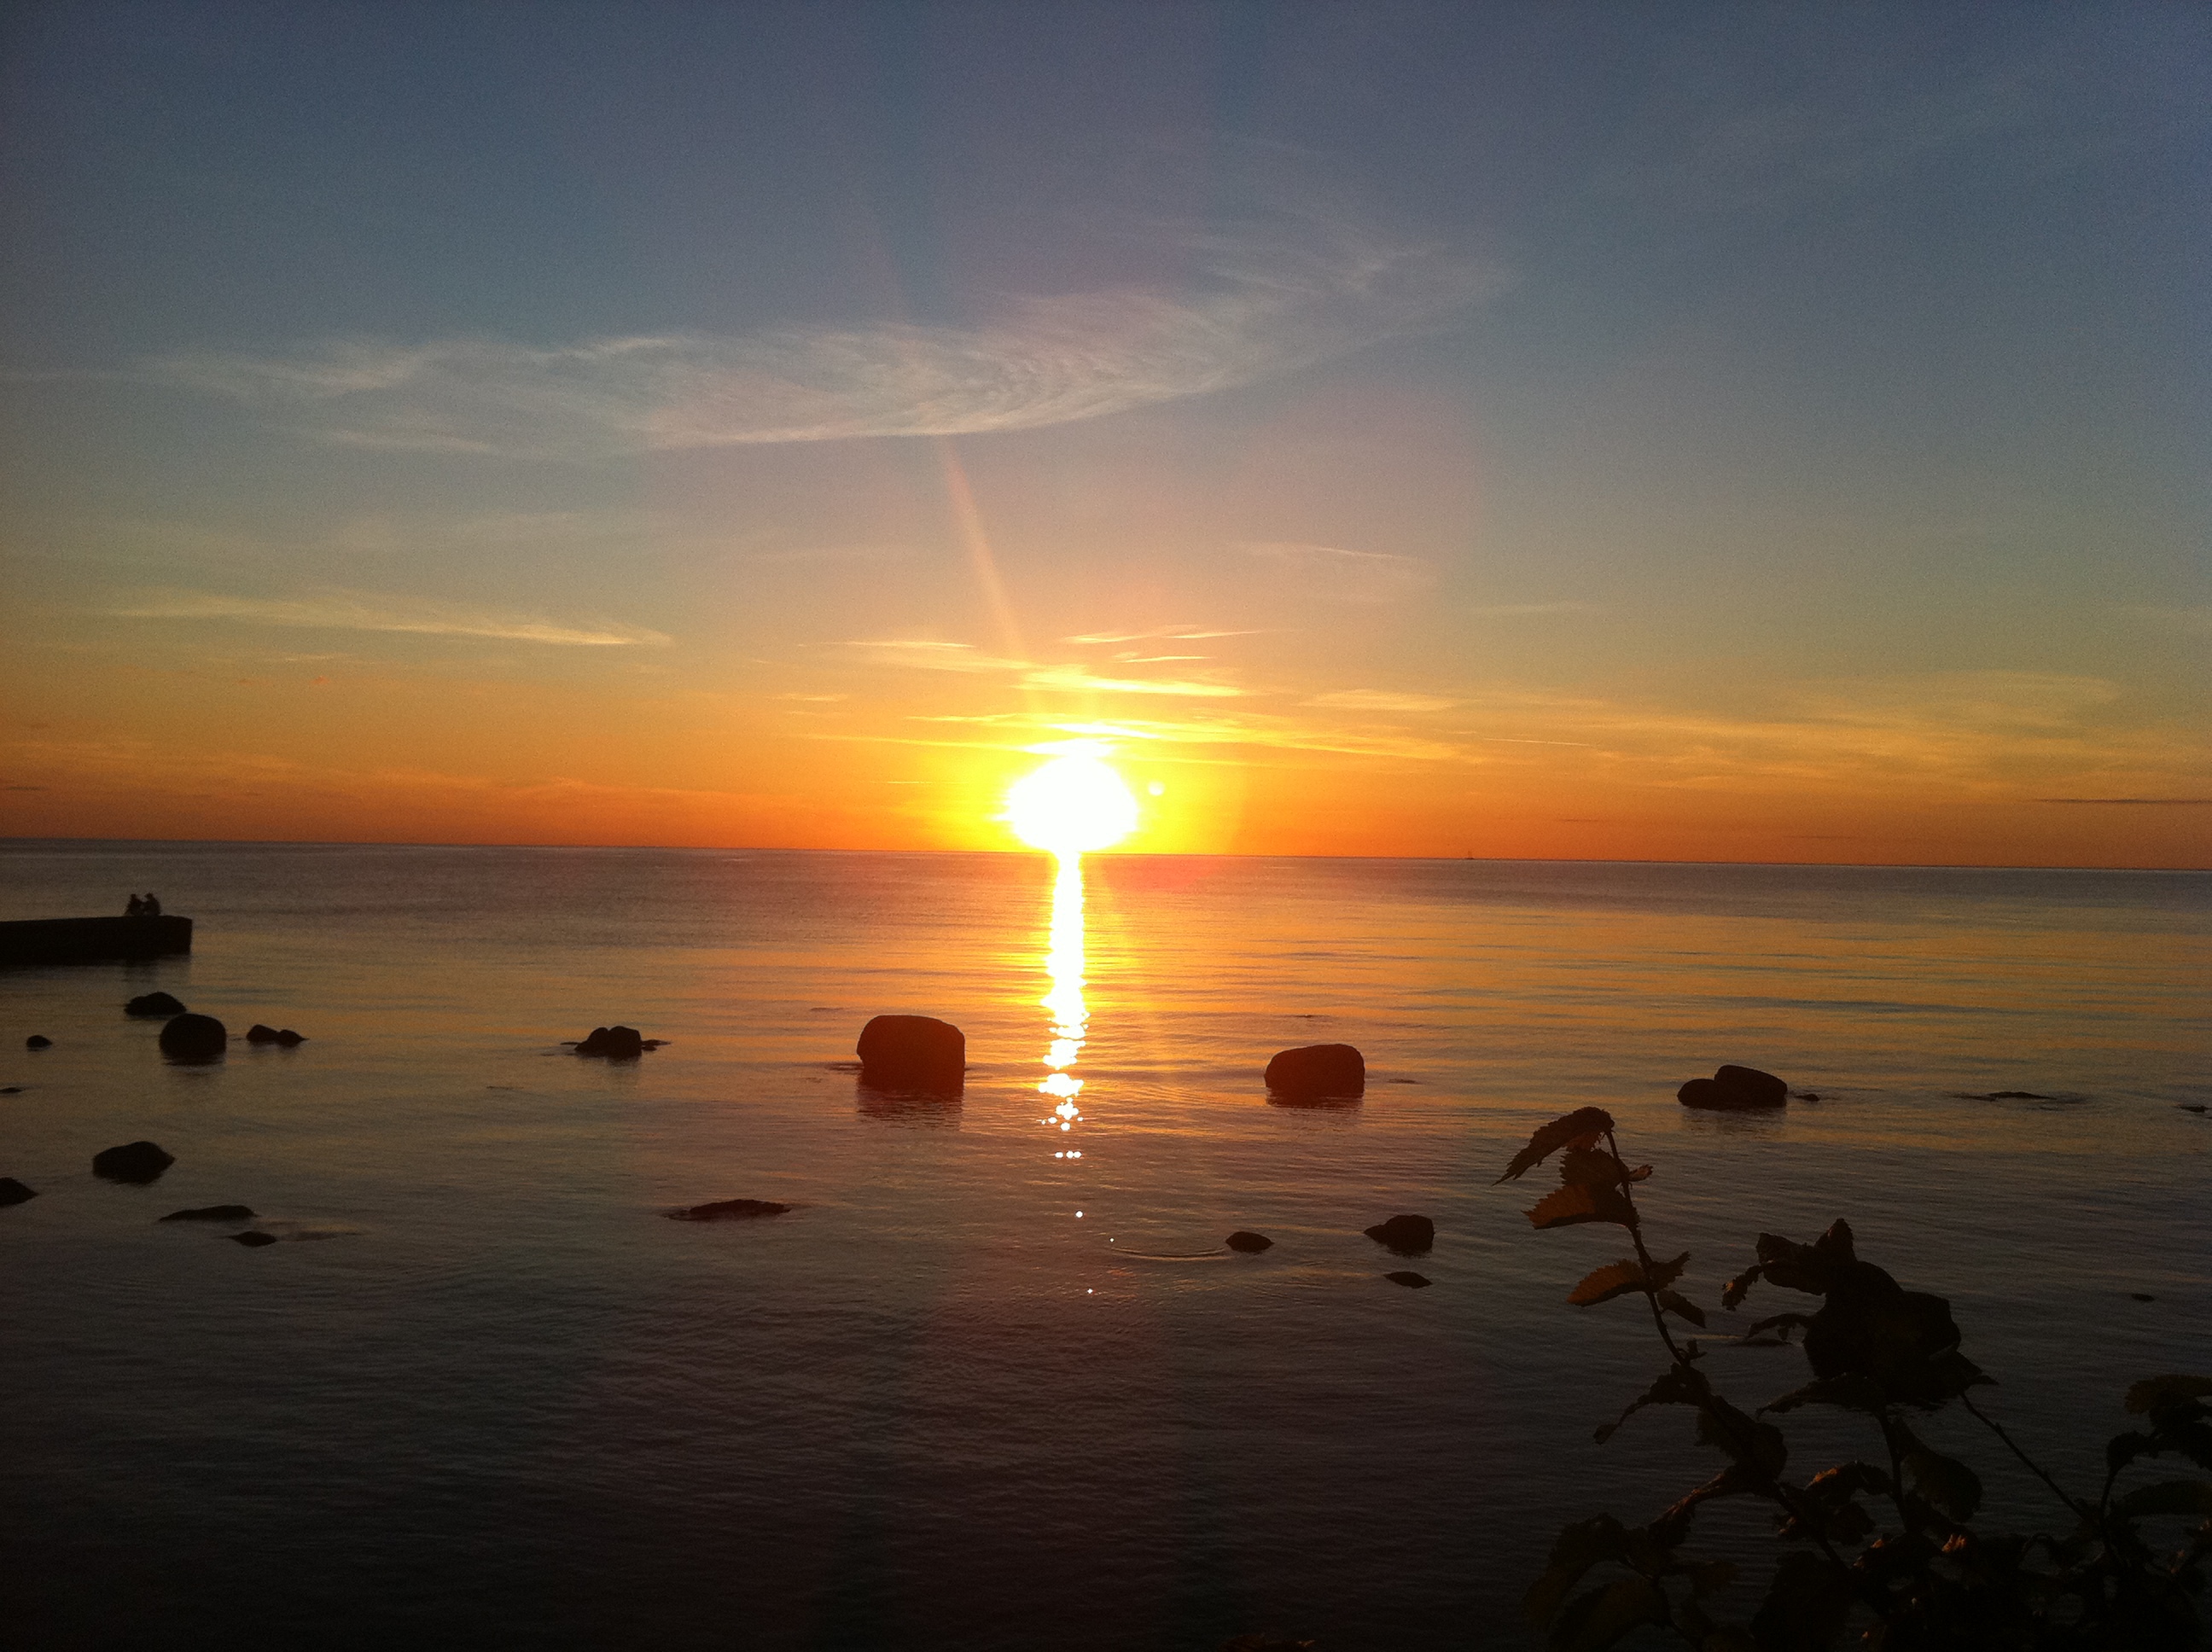 En magisk påklädd solnedgång från Gotland.